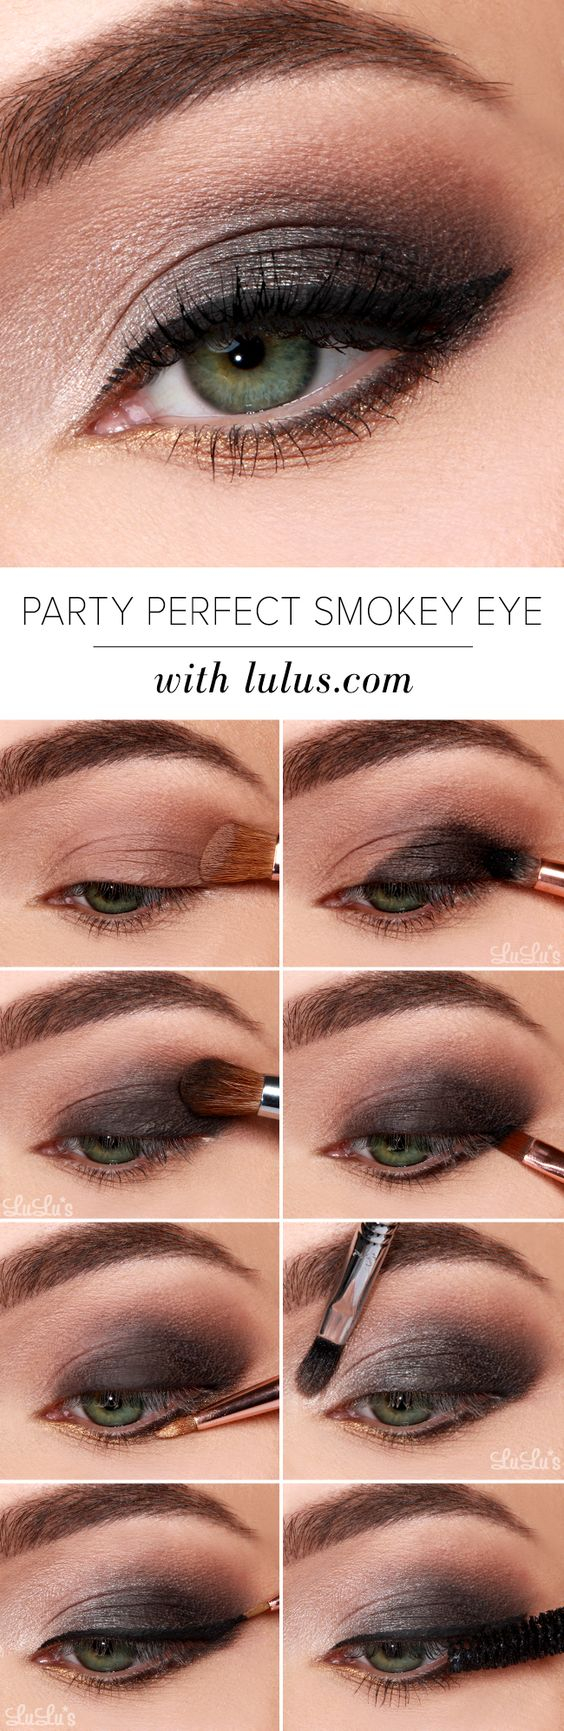 Eye Makeup Tutorial For Hazel Eyes 40 Hottest Smokey Eye Makeup Ideas 2019 Smokey Eye Tutorials For